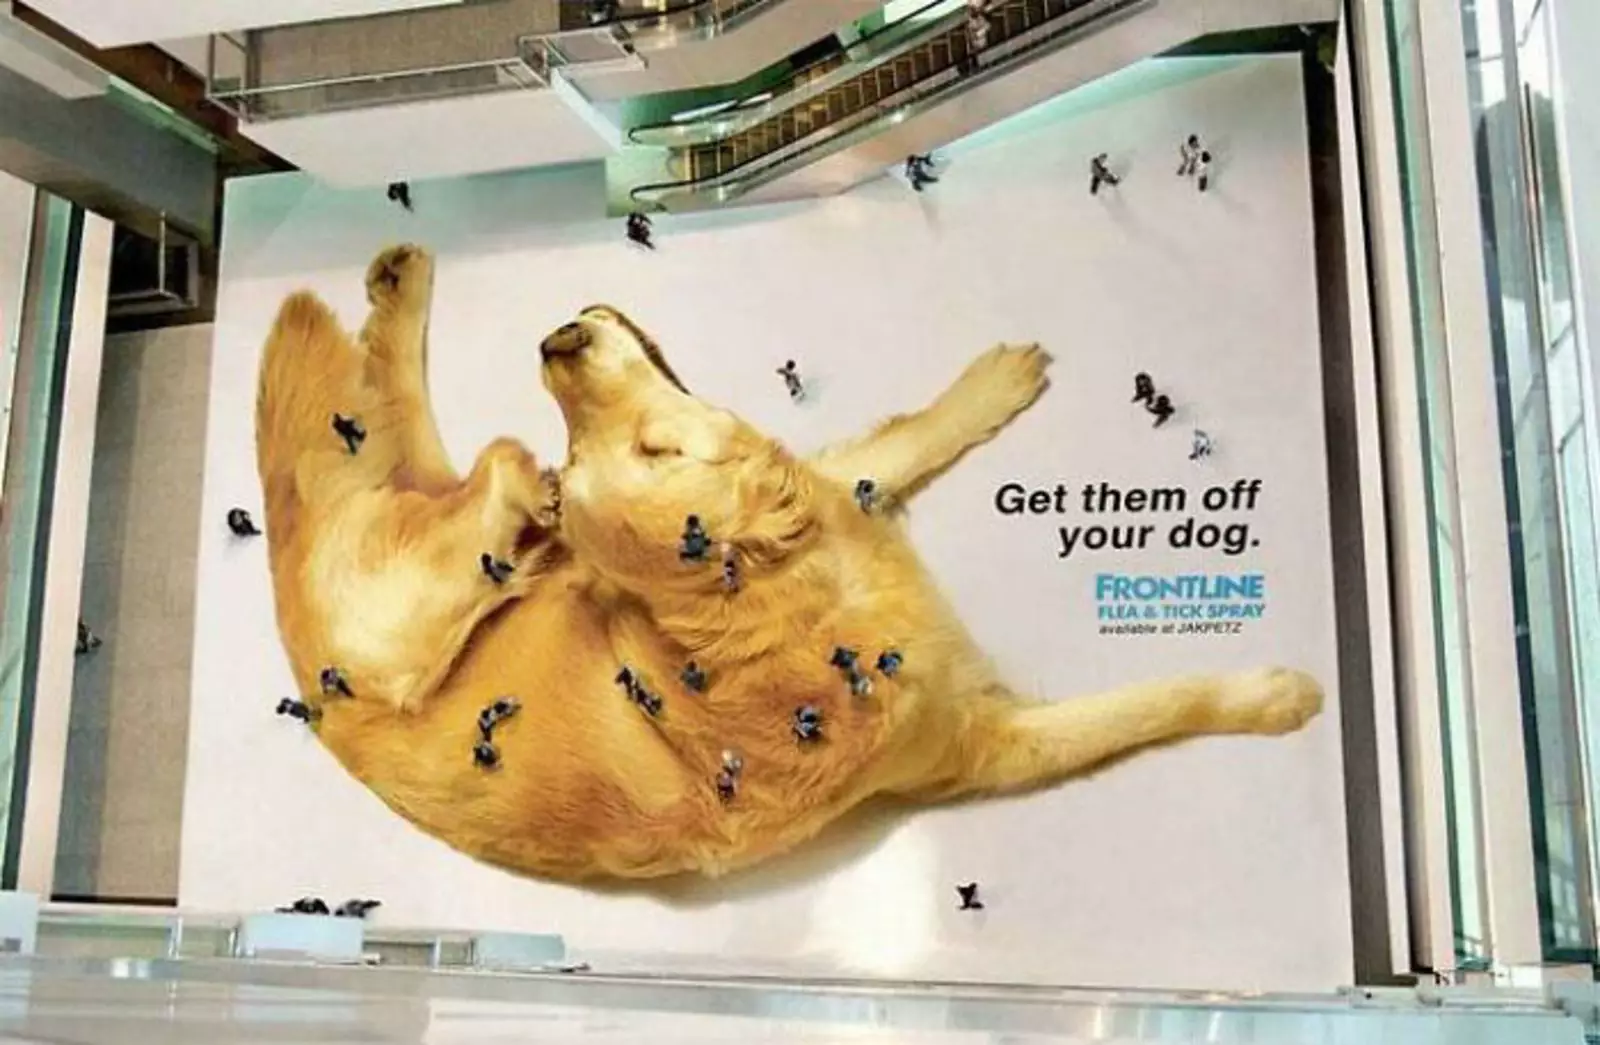 Реклама с использованием пешеходов в качестве клещей на собаке.